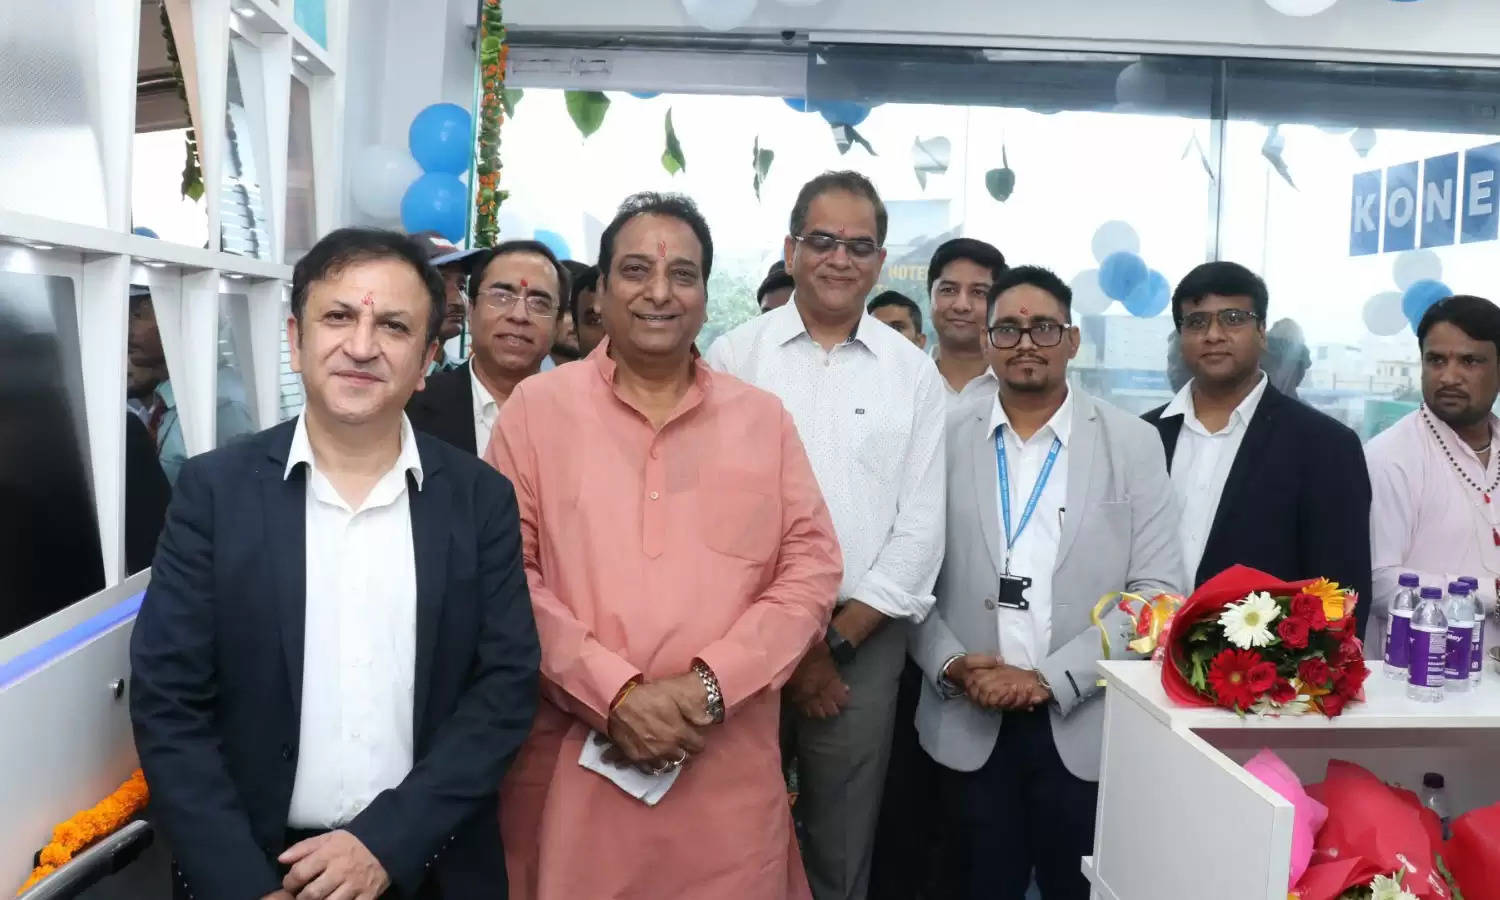 कोने इंडिया ने उत्तराखंड में किया विस्तार, देहरादून में की नये कार्यालय की घोषणा